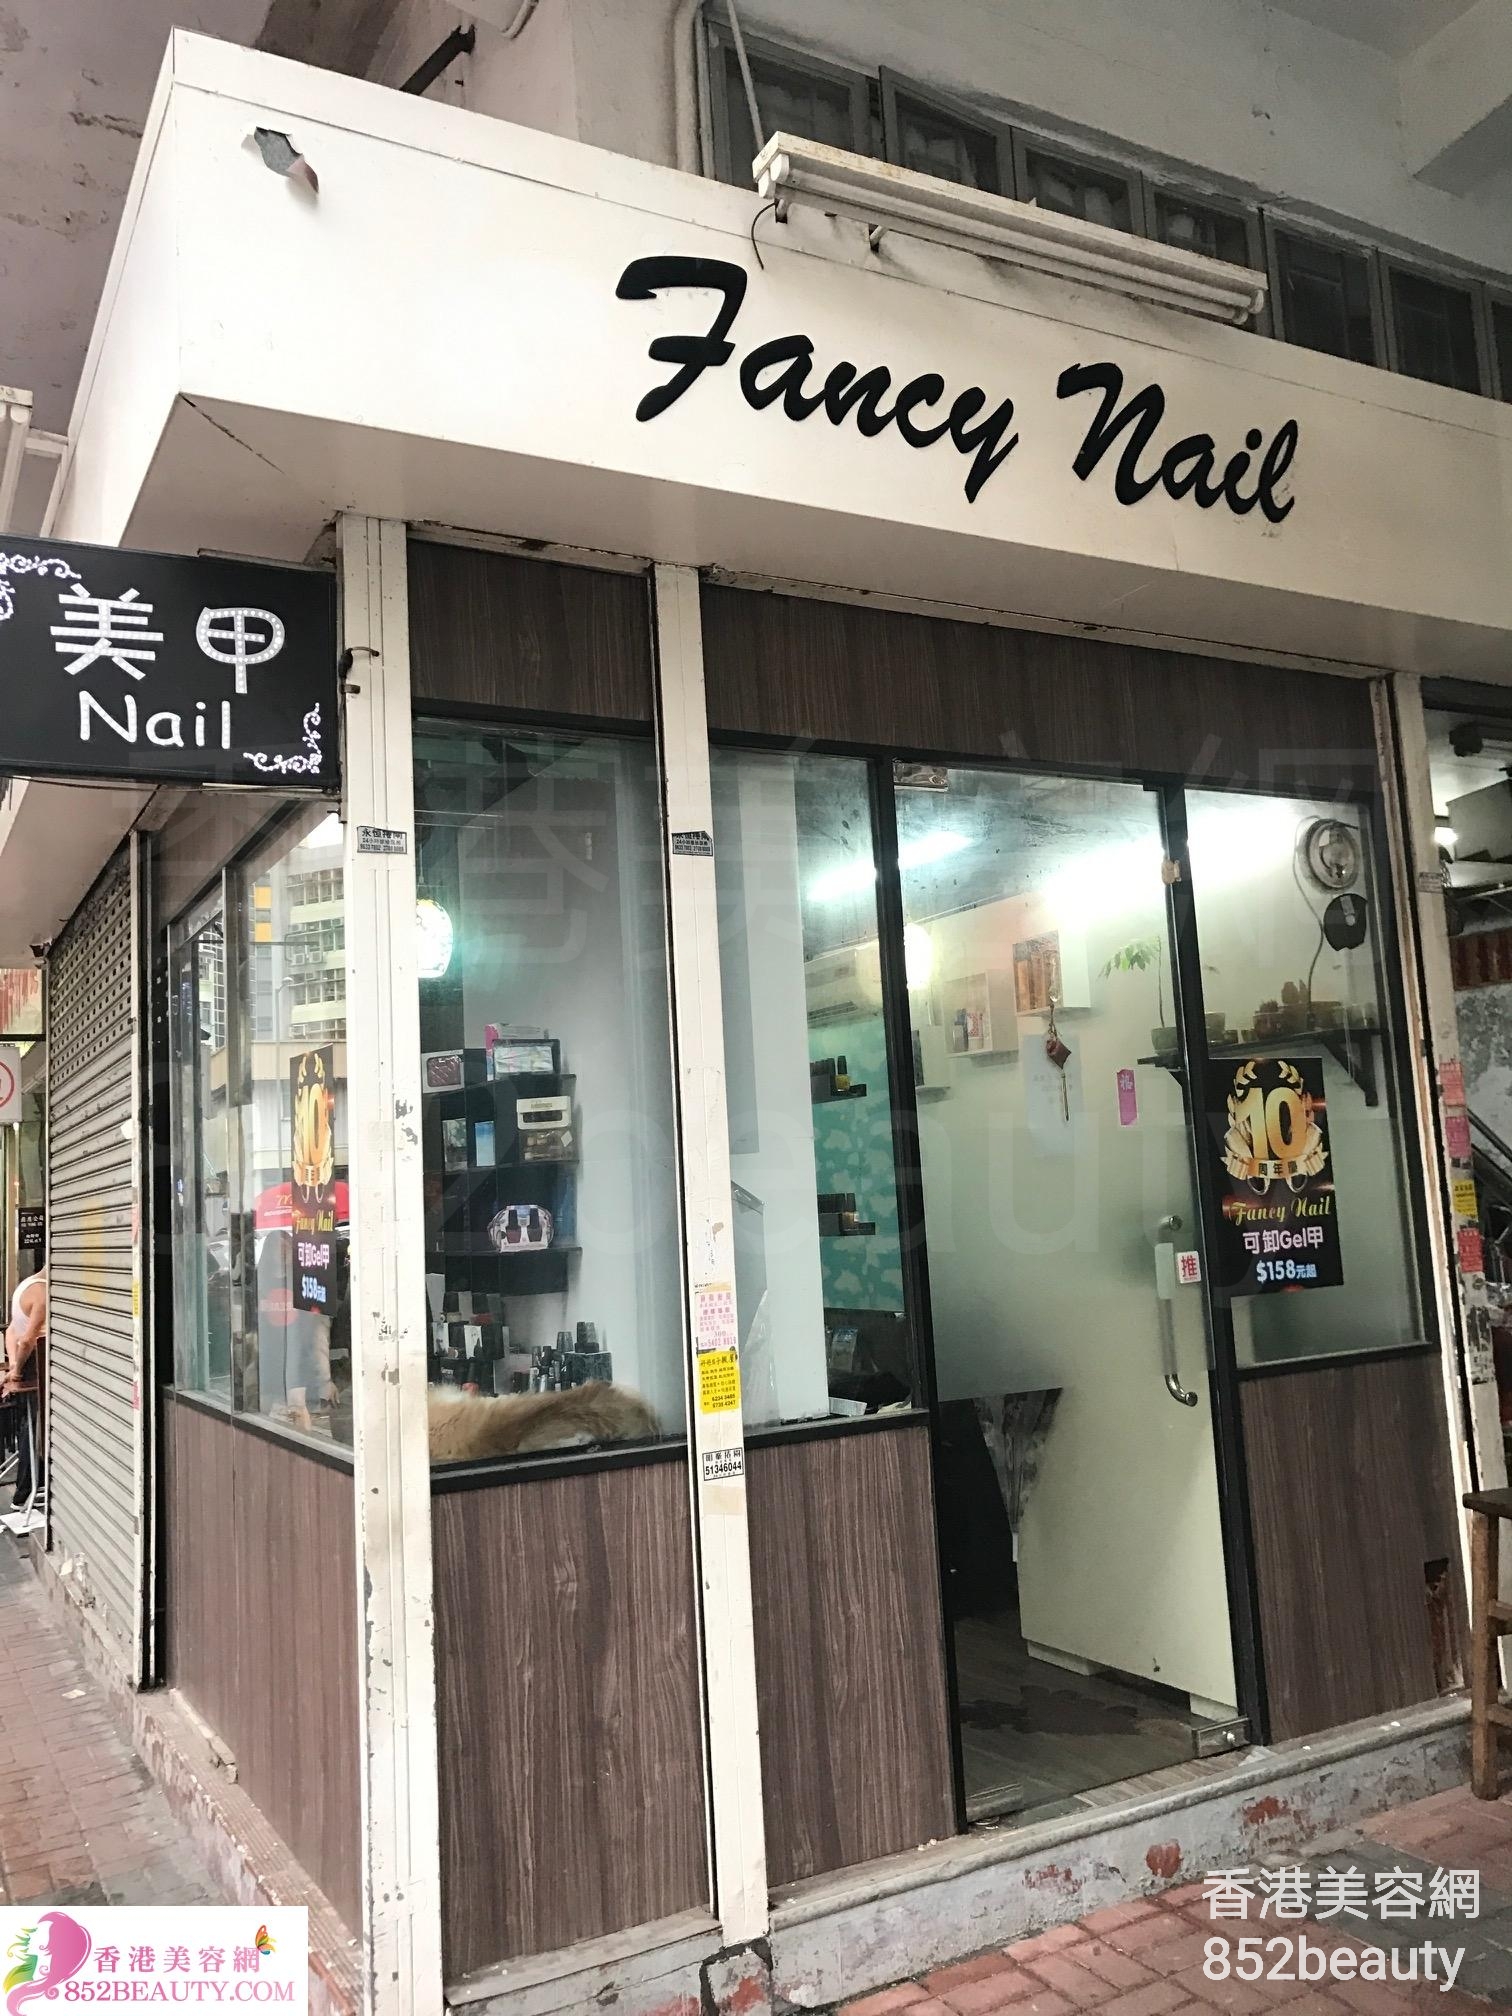 Manicure: Fancy Nail